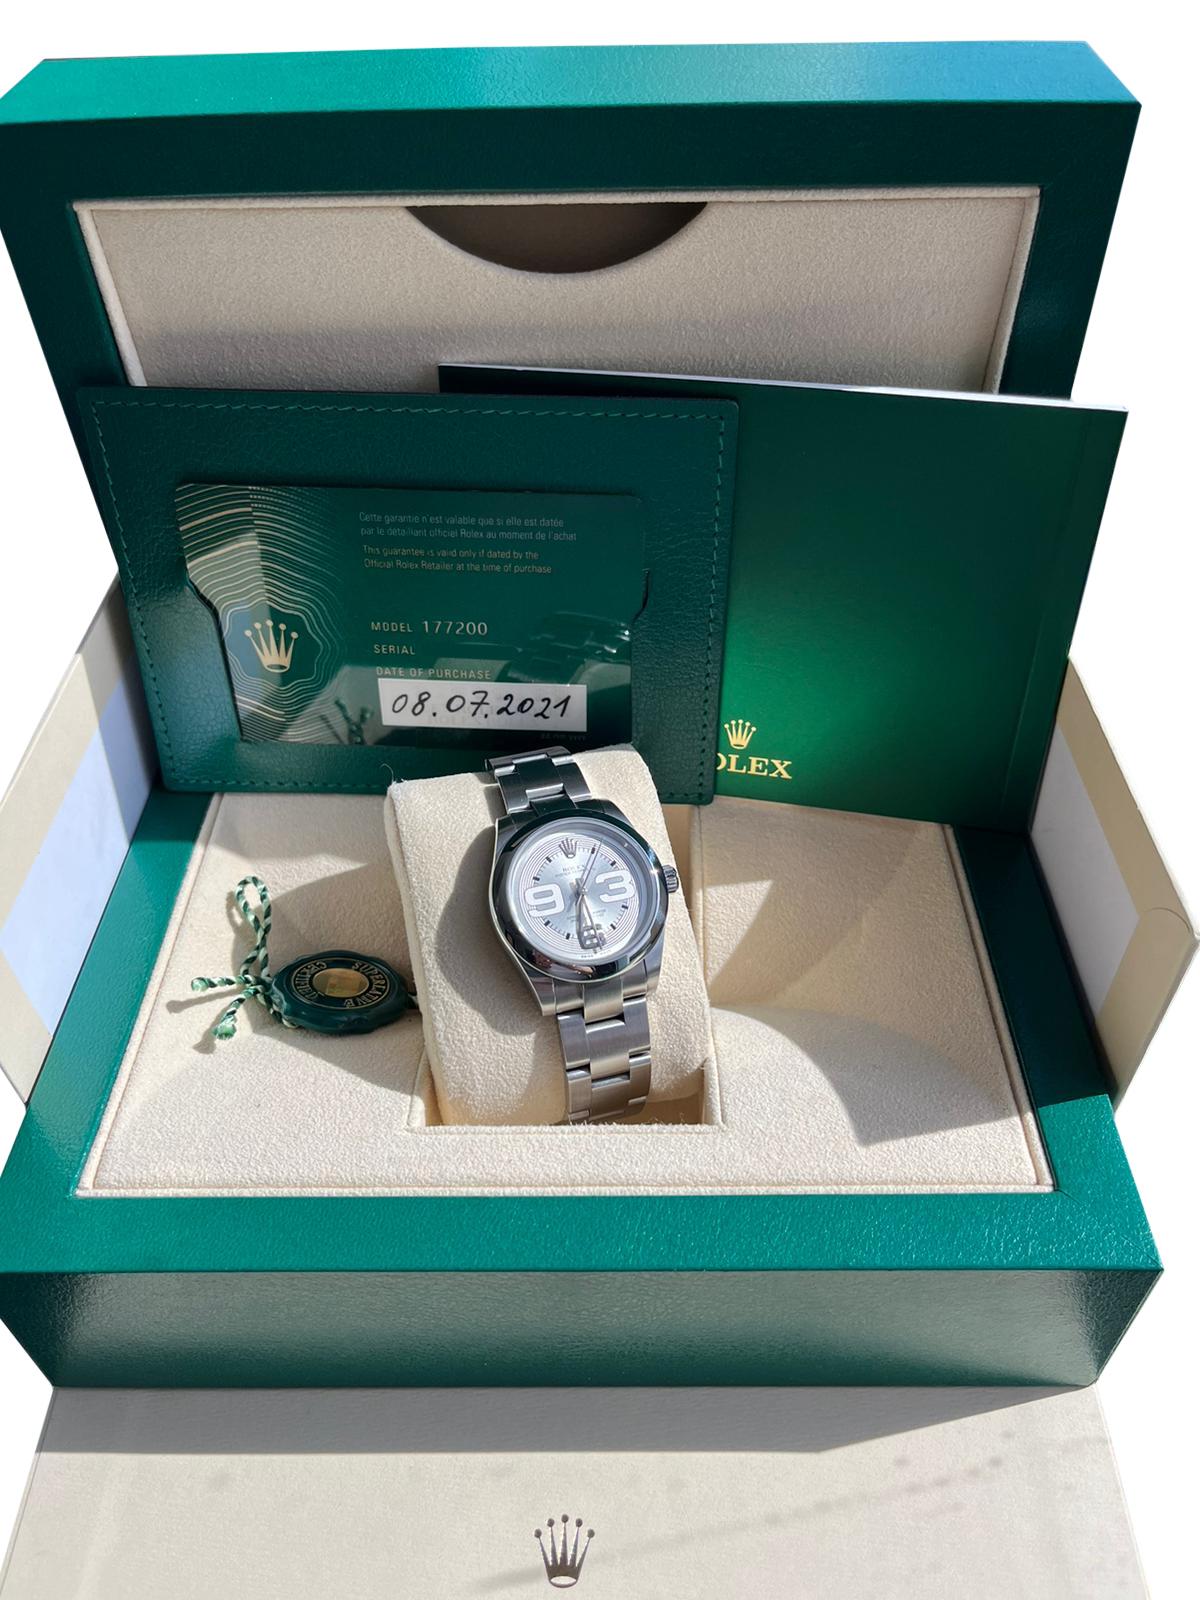 Rolex Midsize 31mm Silver Dial Domed Bezel Steel Ladies Watch 177200. Mouvement à remontage automatique certifié officiellement chronomètre. Boîtier oyster en acier inoxydable de 31.0 mm de diamètre. Logo Rolex sur une couronne. Lunette bombée lisse